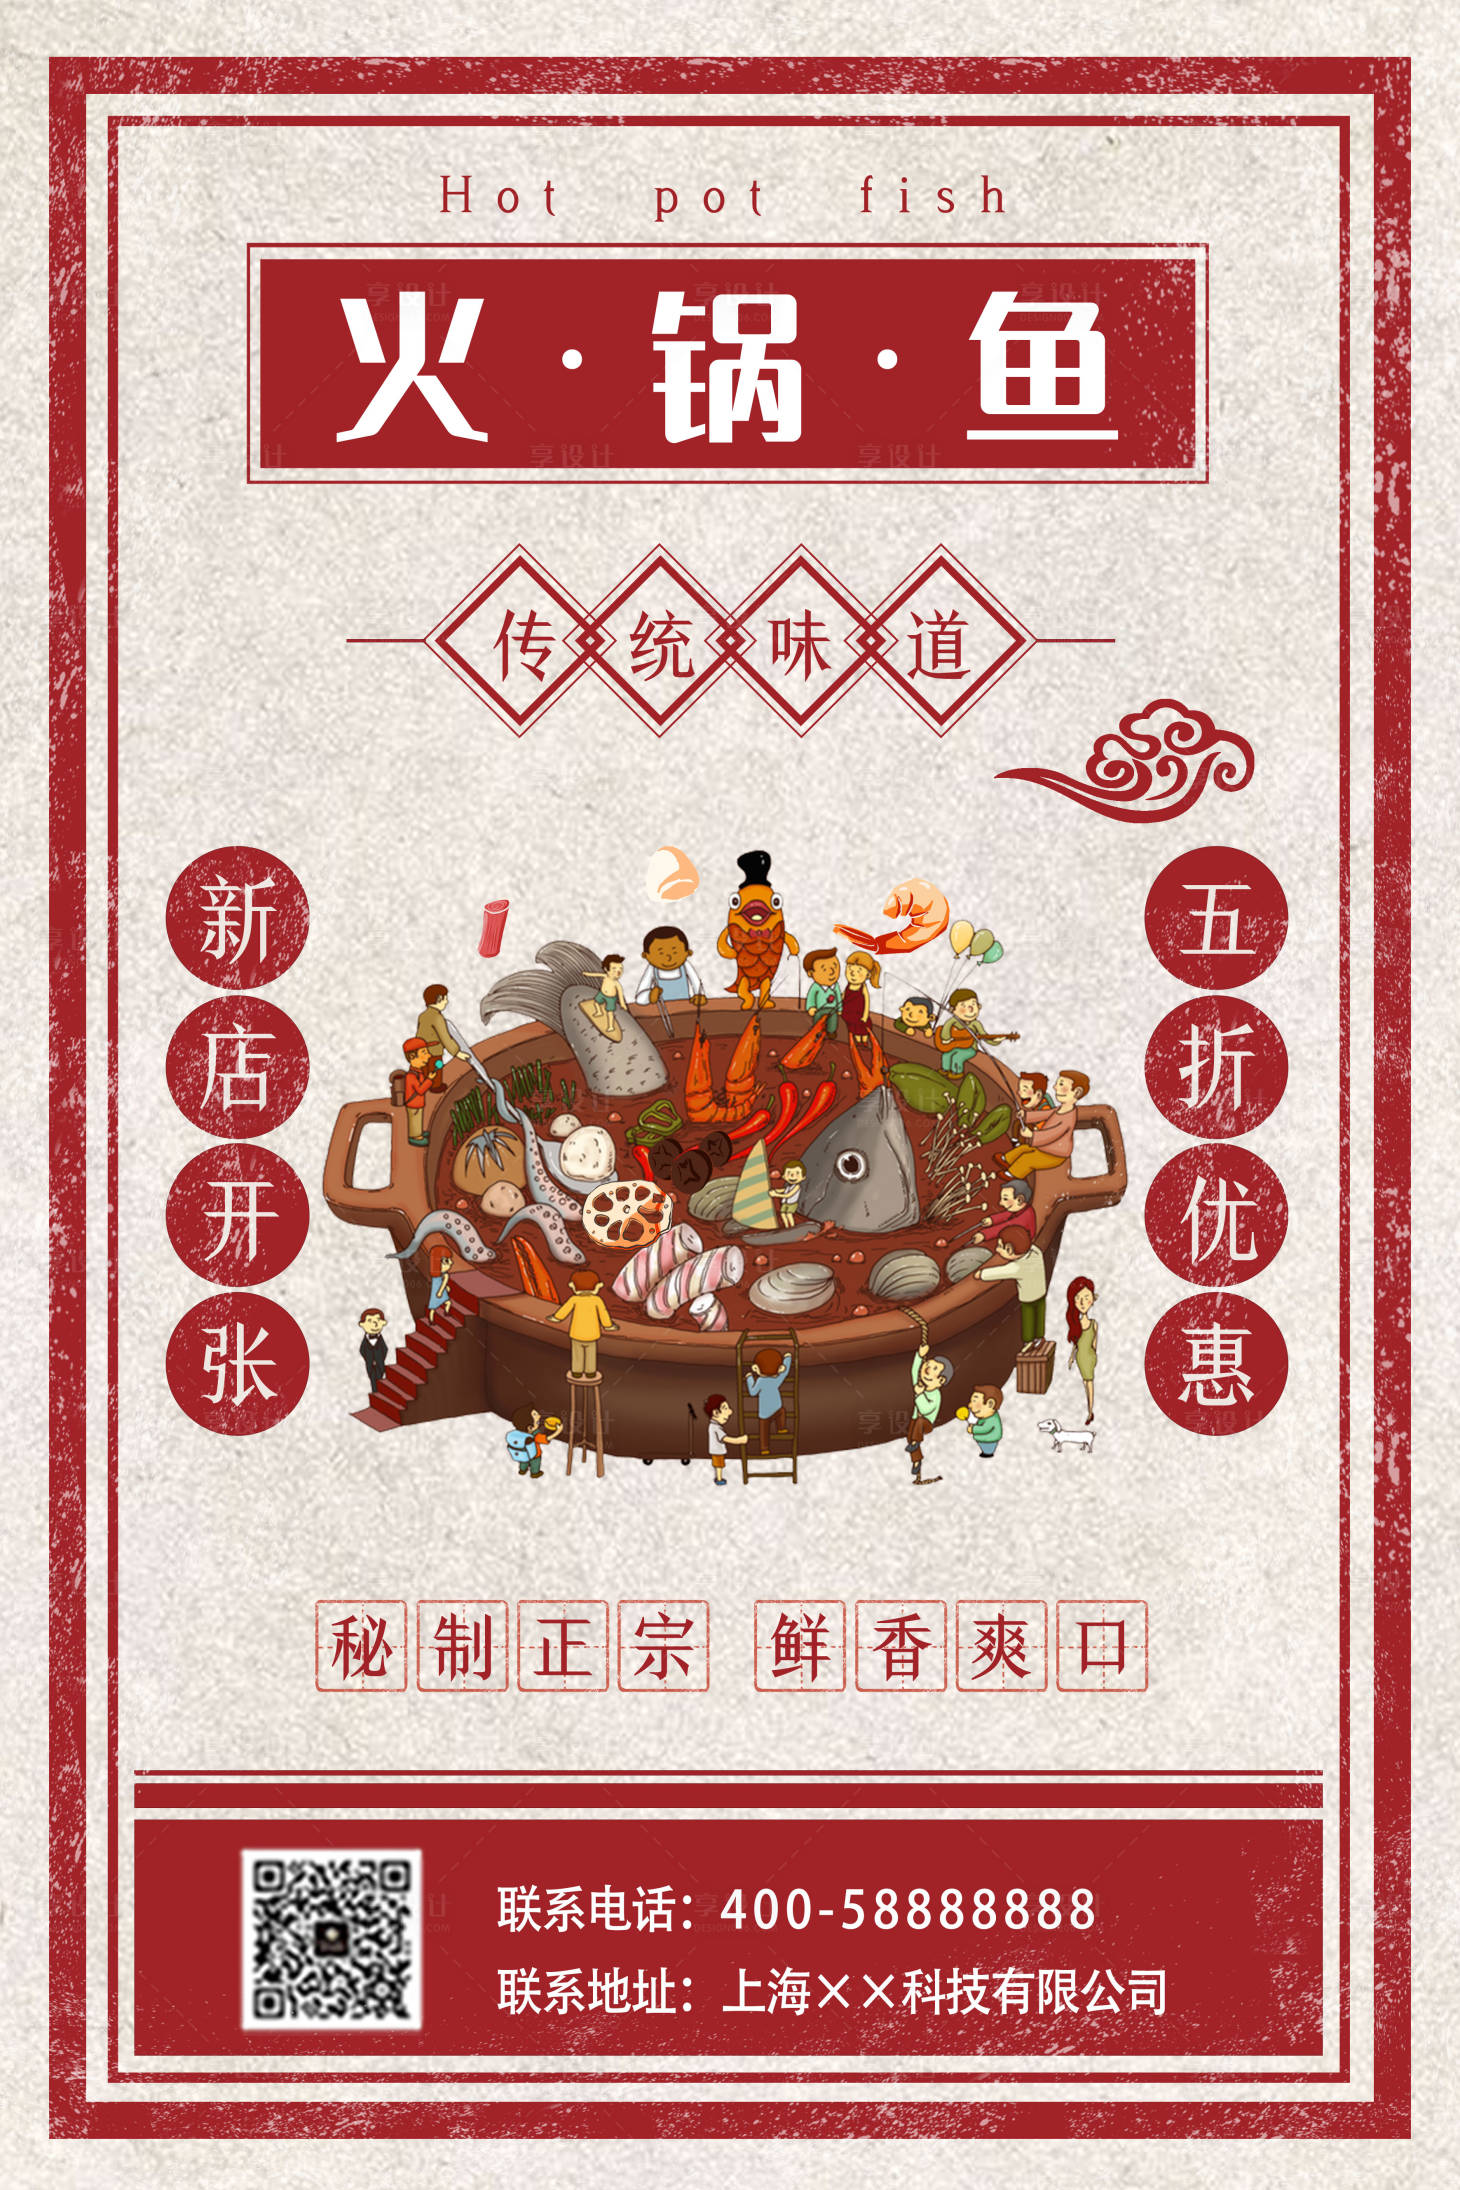 火锅鱼新店开业促销海报psd广告设计素材海报模板免费